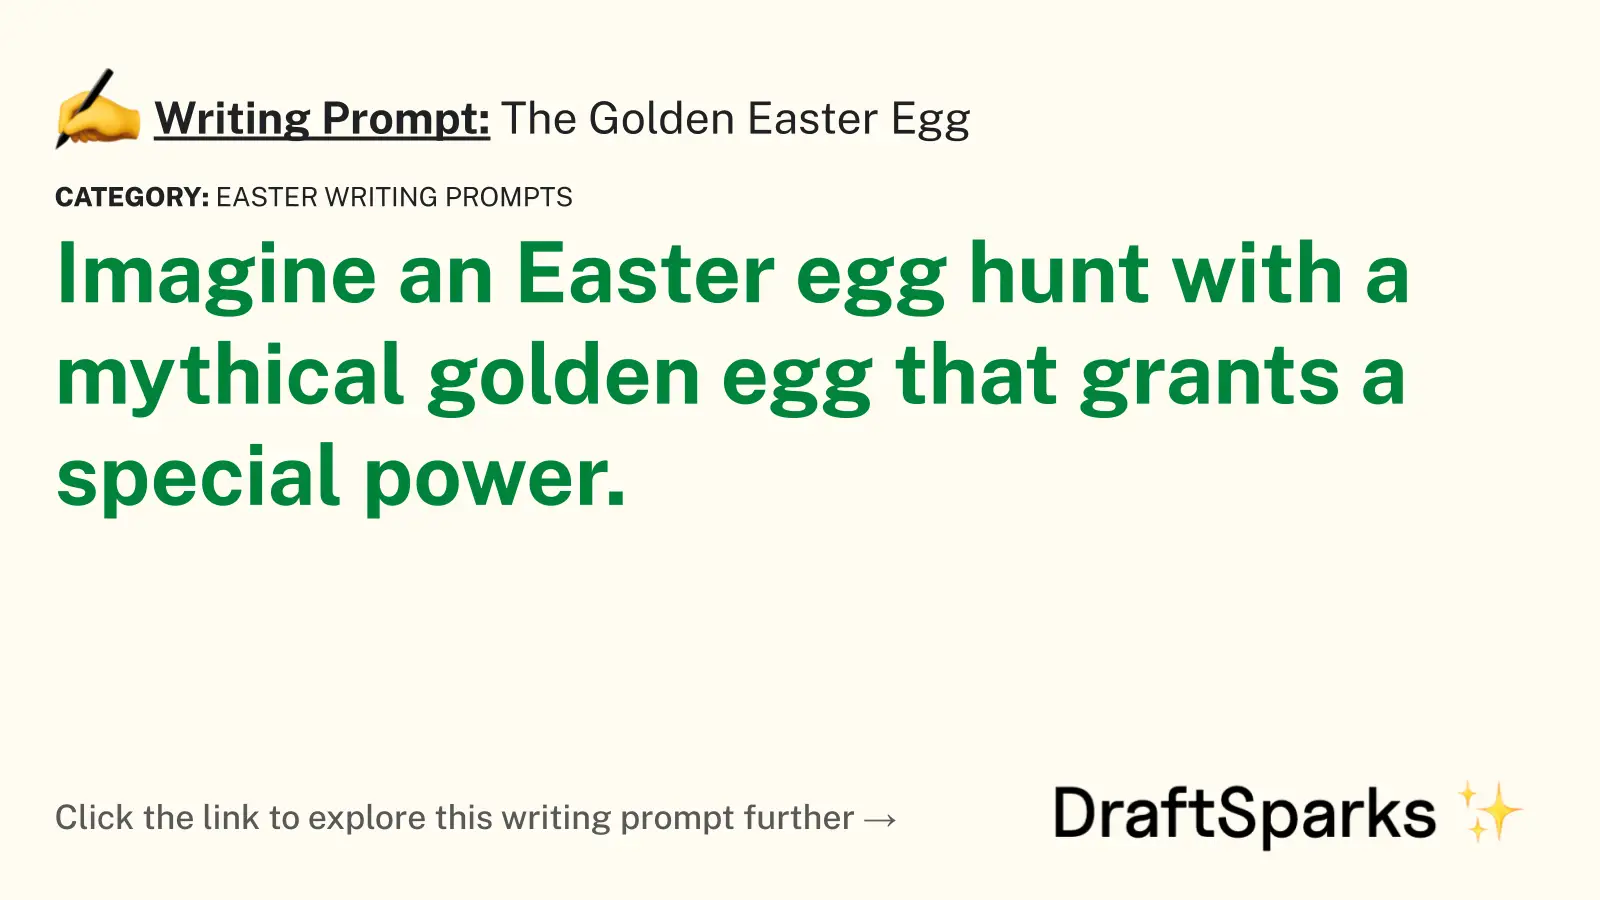 The Golden Easter Egg